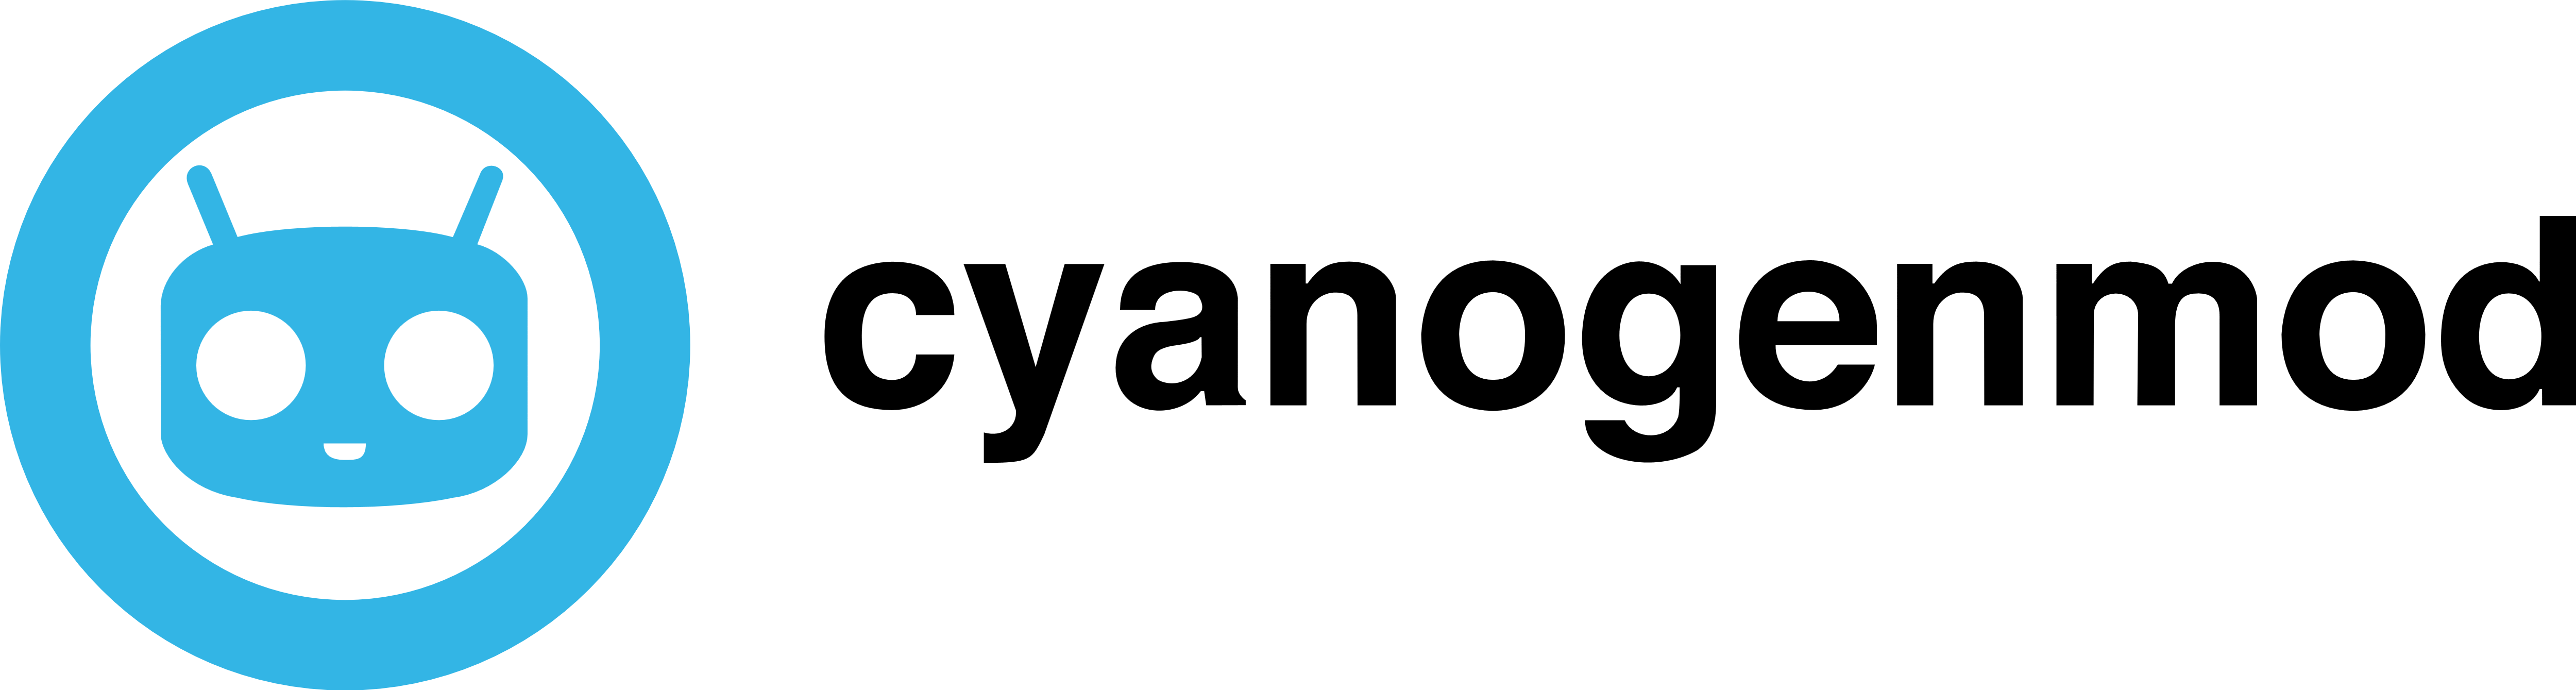 CyanogenMod Logo - CyanogenMod – Logos Download